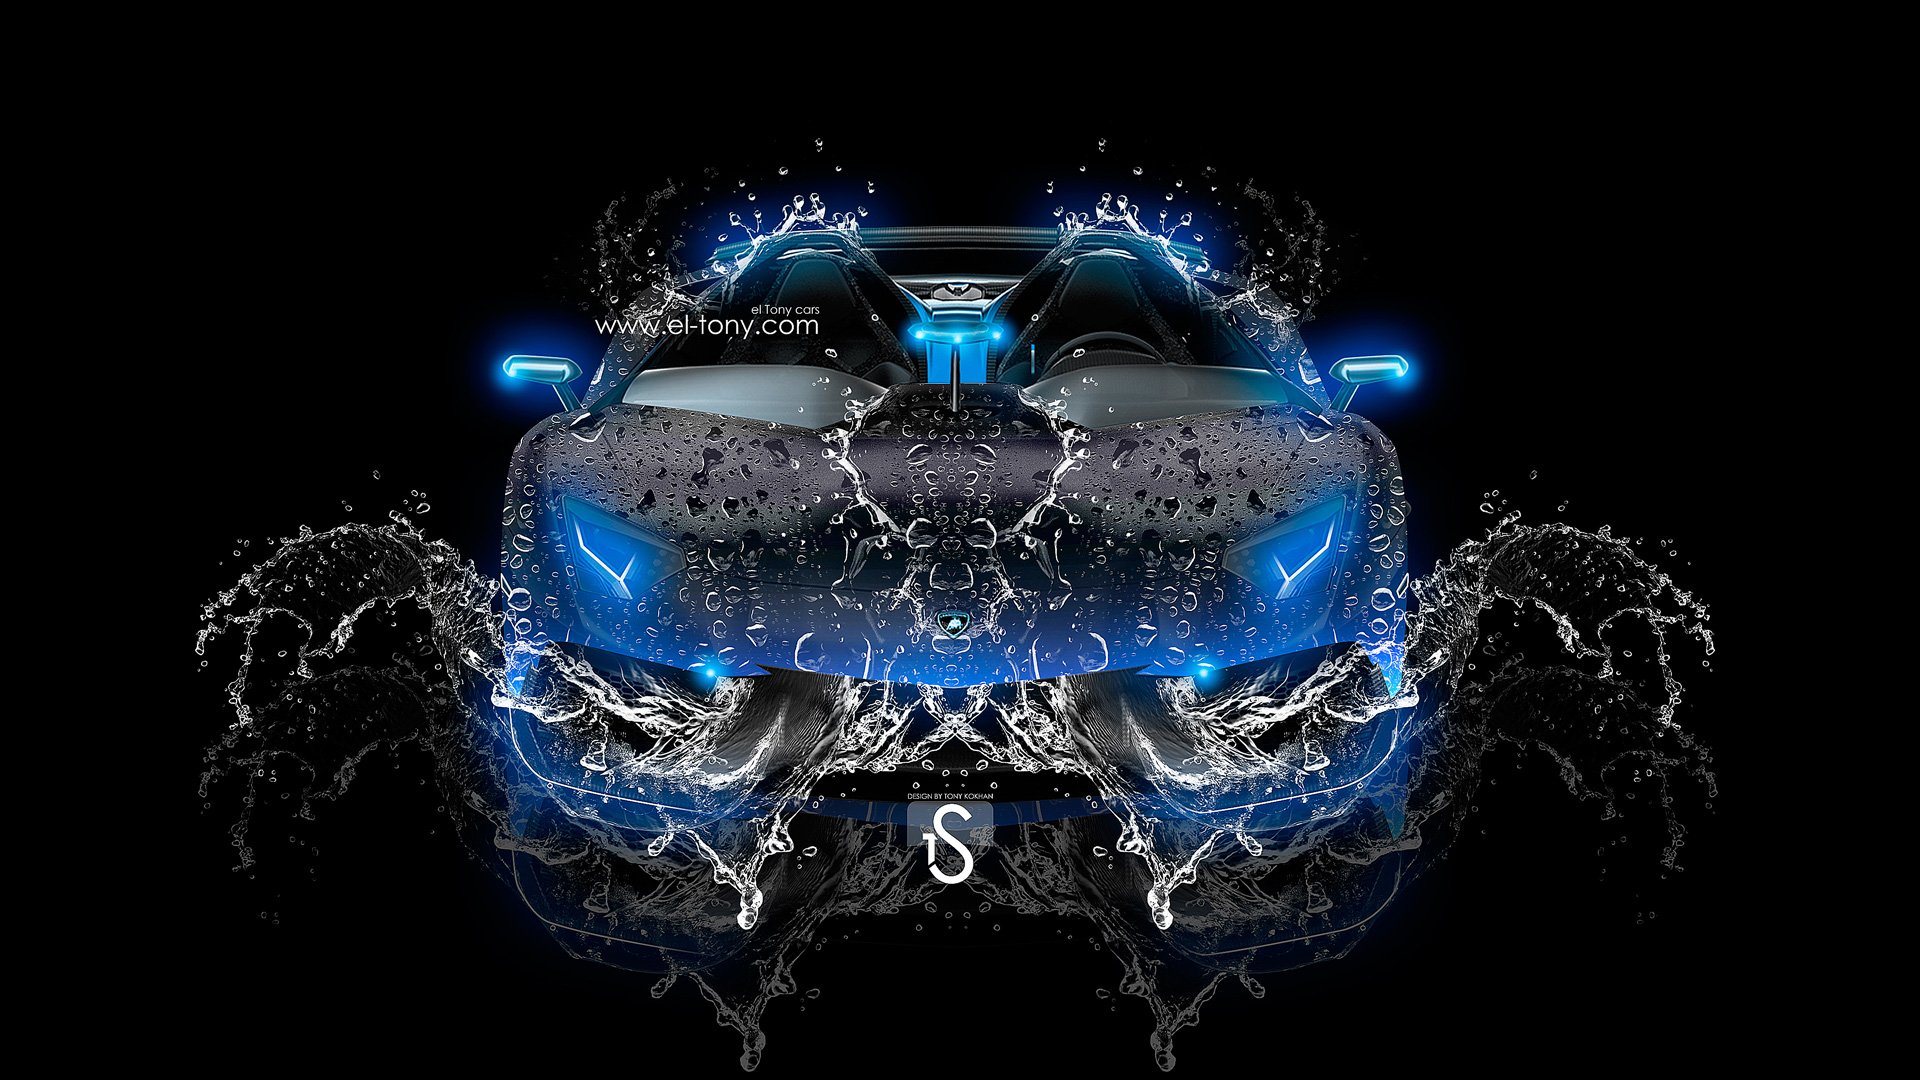 25 Neon Blue Lamborghini Wallpapers  WallpaperSafari